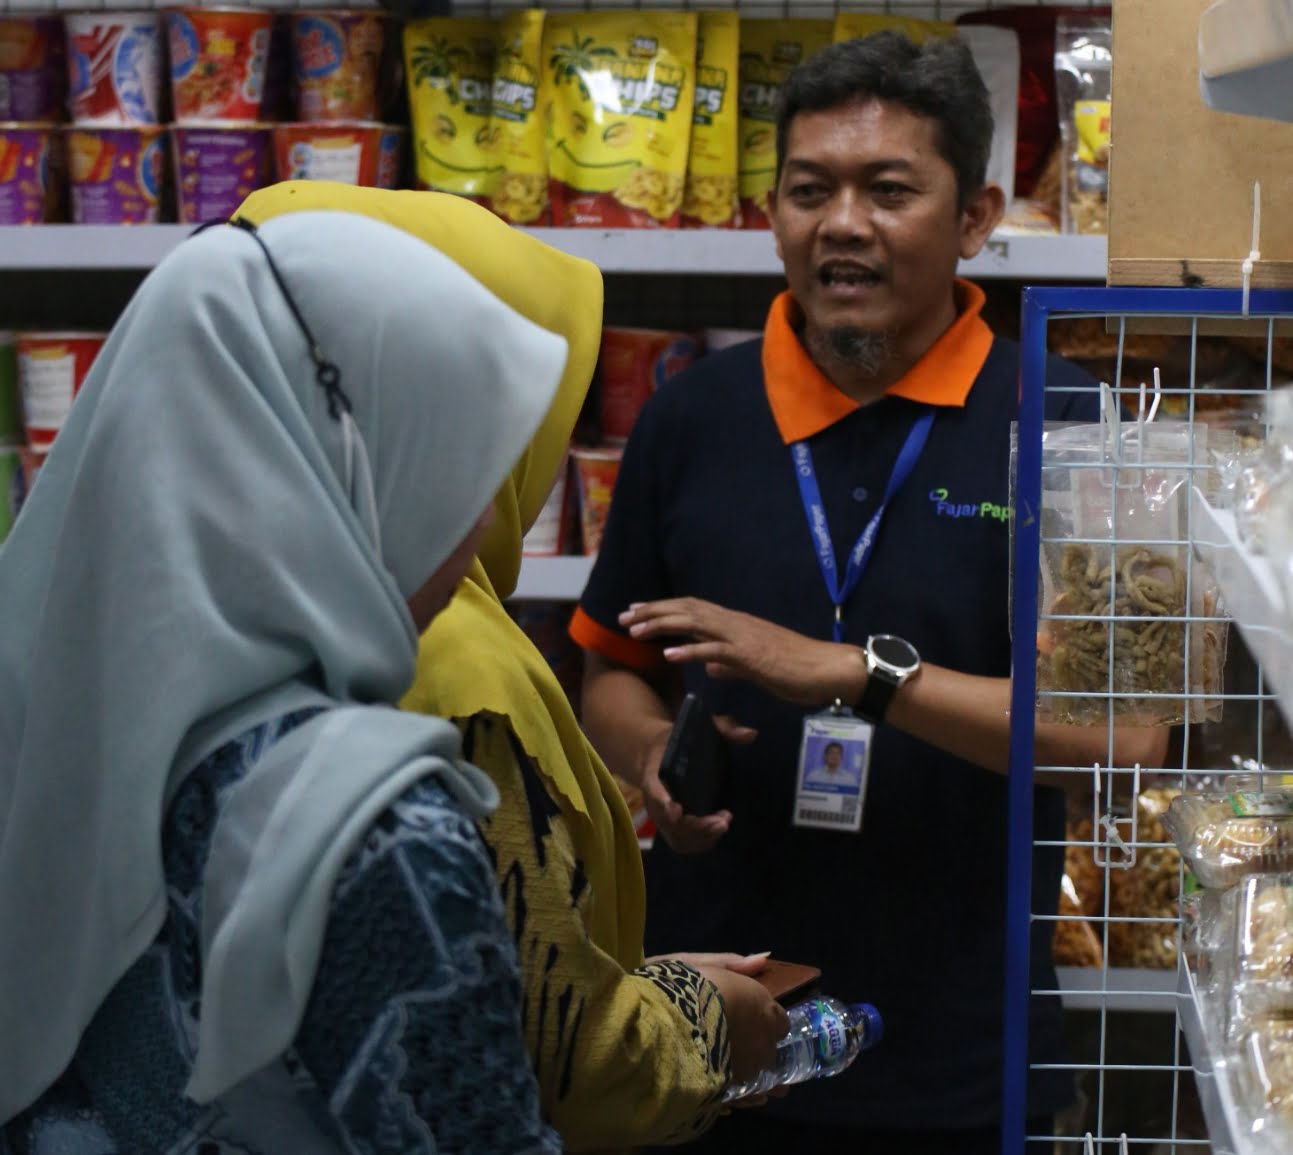 Fajar Paper Terima Apresiasi Pansus 23 DPRD Kabupaten Bekasi dalam Mengembangkan Koperasi Karyawan Surya Abadi - Desapedia